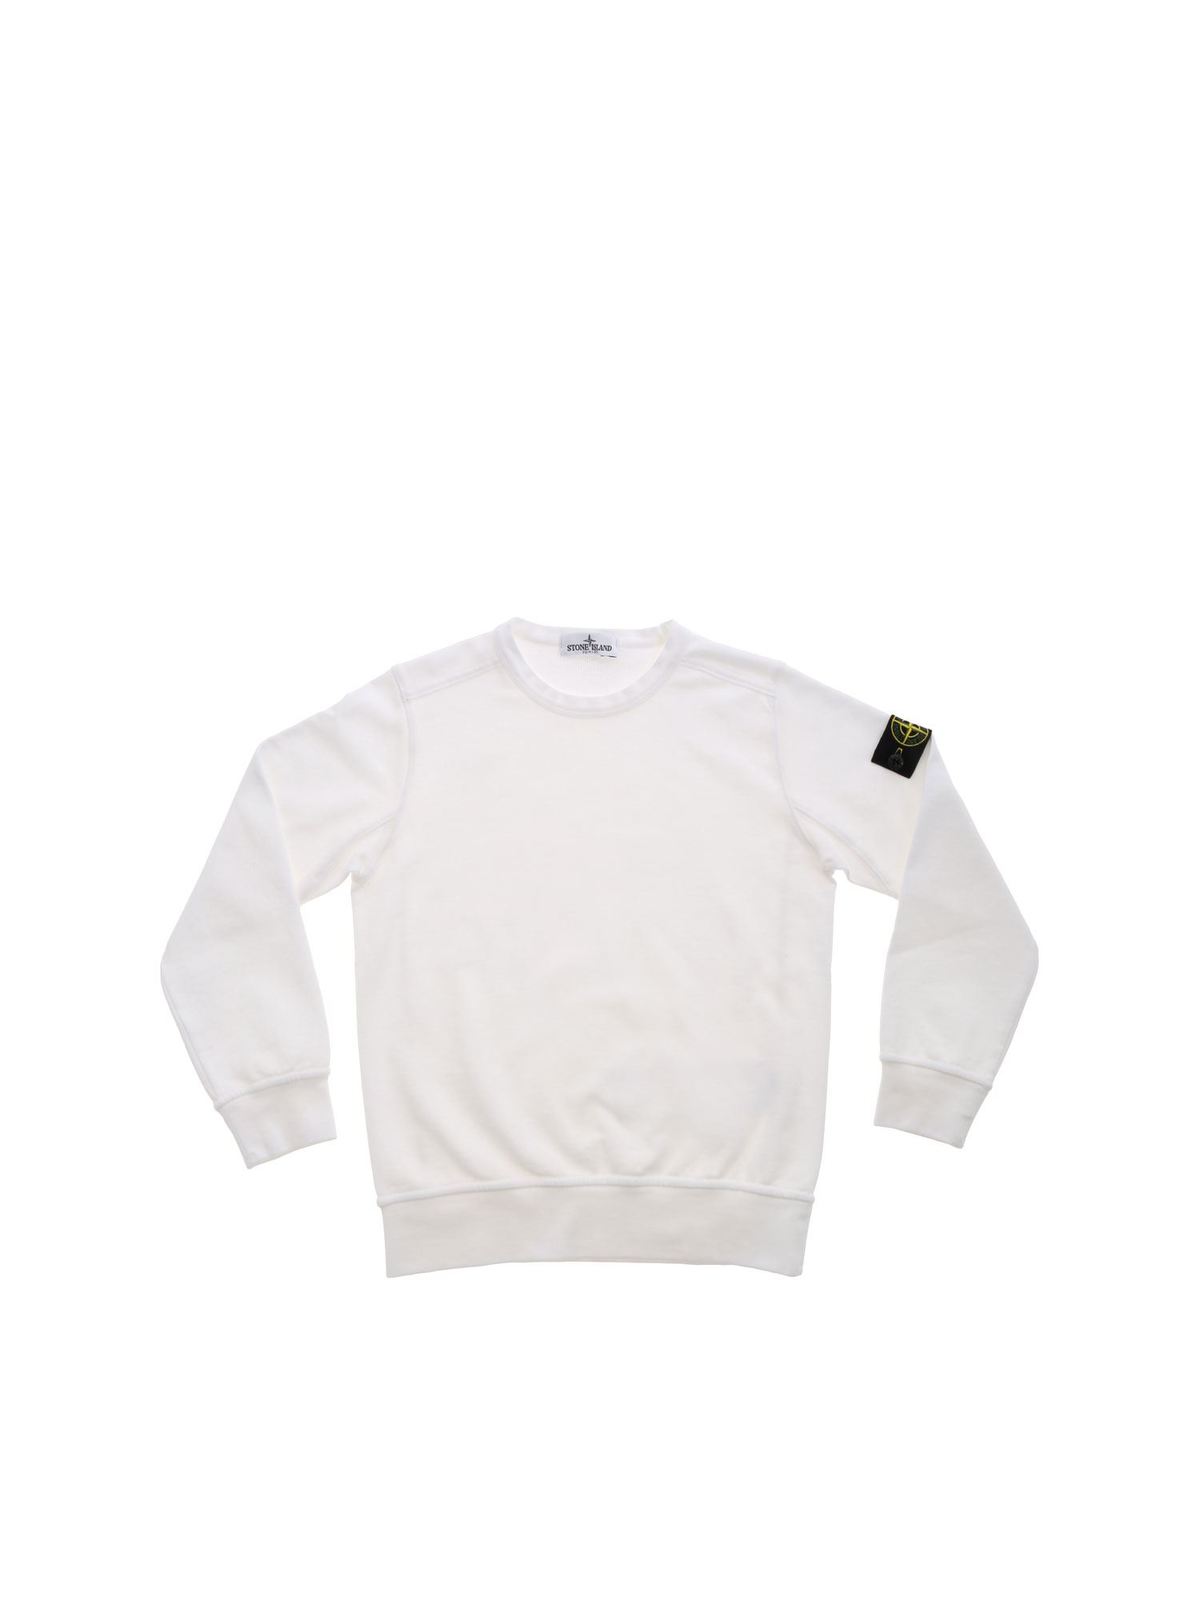 white stone island sweatshirt junior